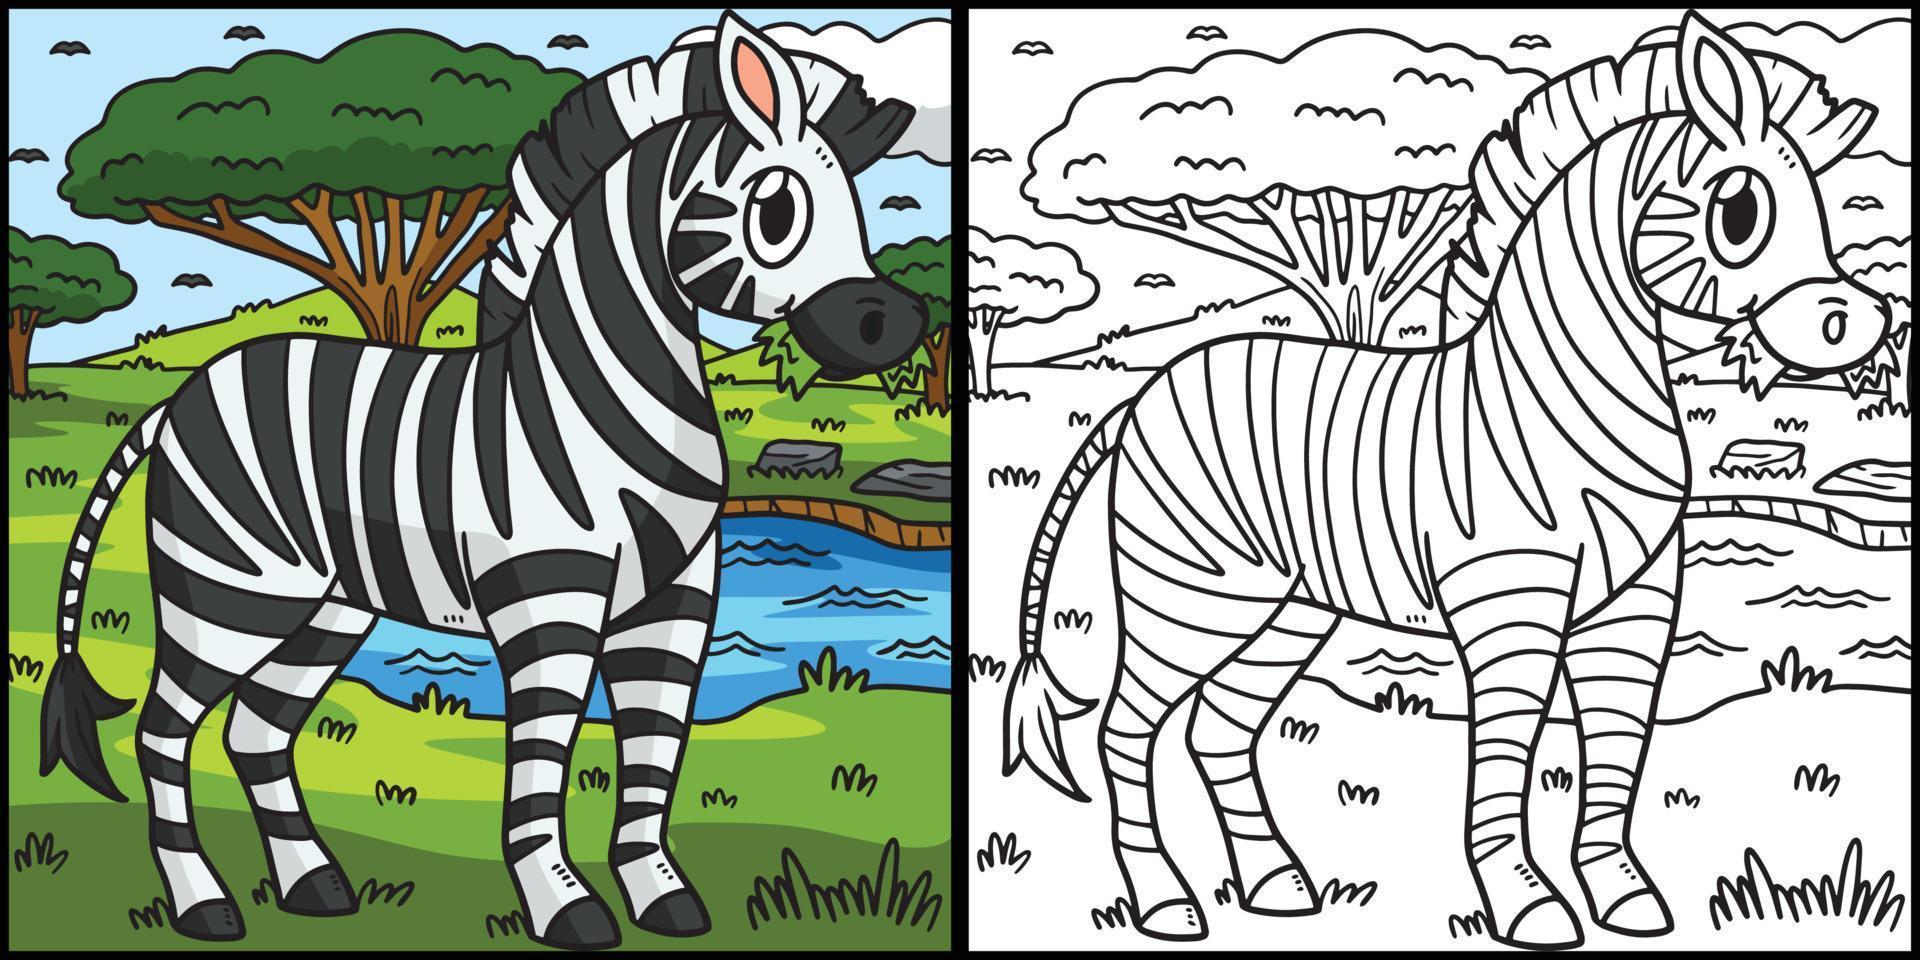 zebra kleurplaat gekleurde illustratie vector